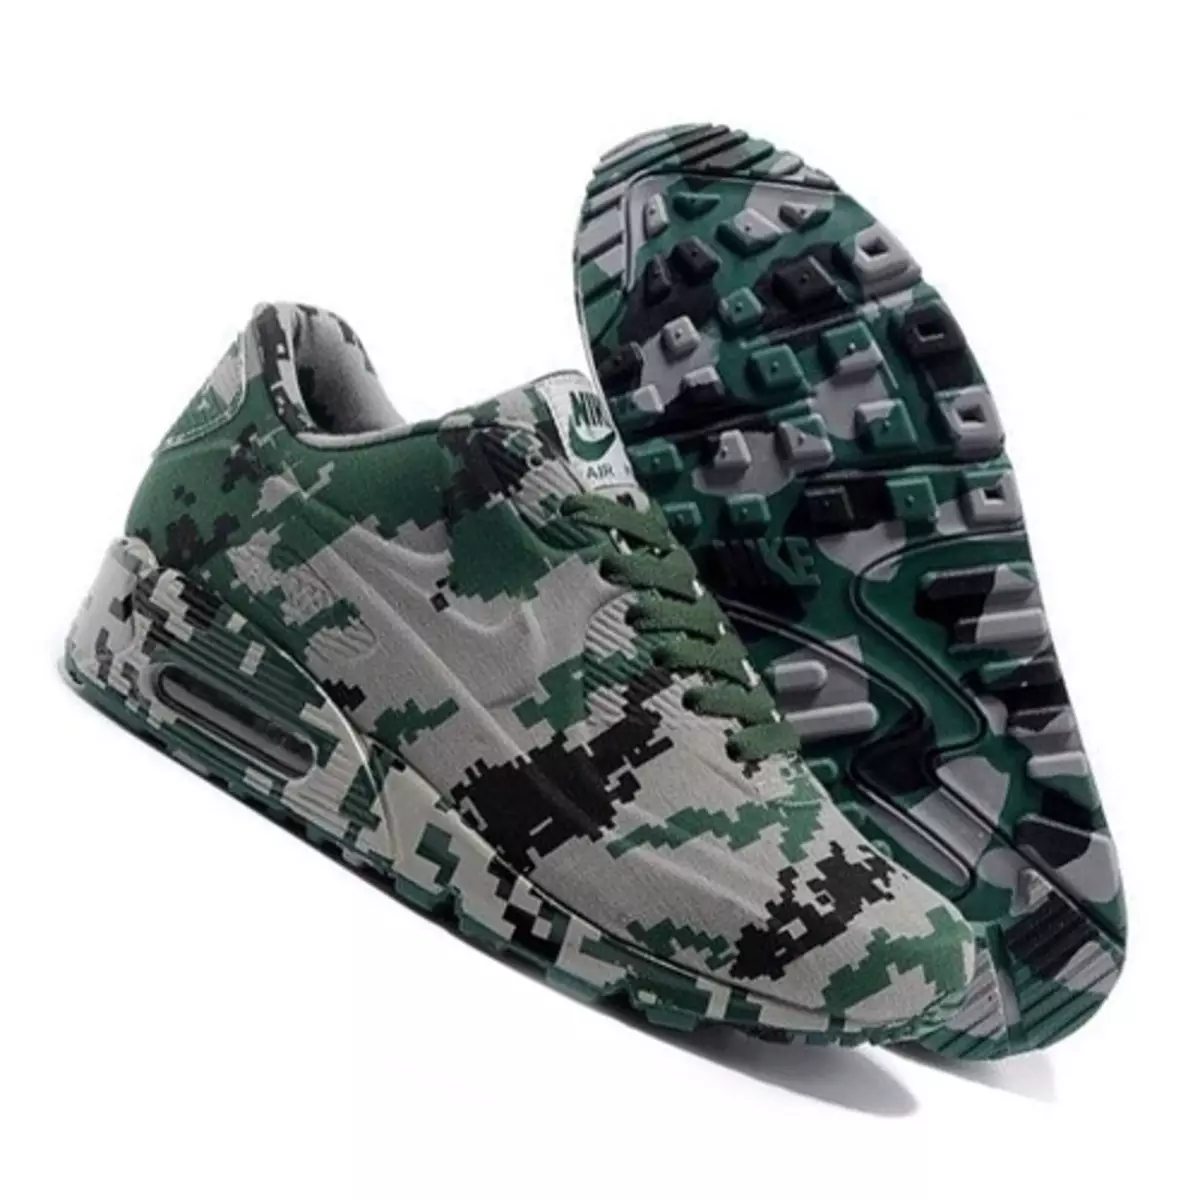 Sneakers cuddliw (49 Lluniau): Modelau yn arddull militarïau gyda phrint o guddliw, Khaki, cuddliw 2031_22